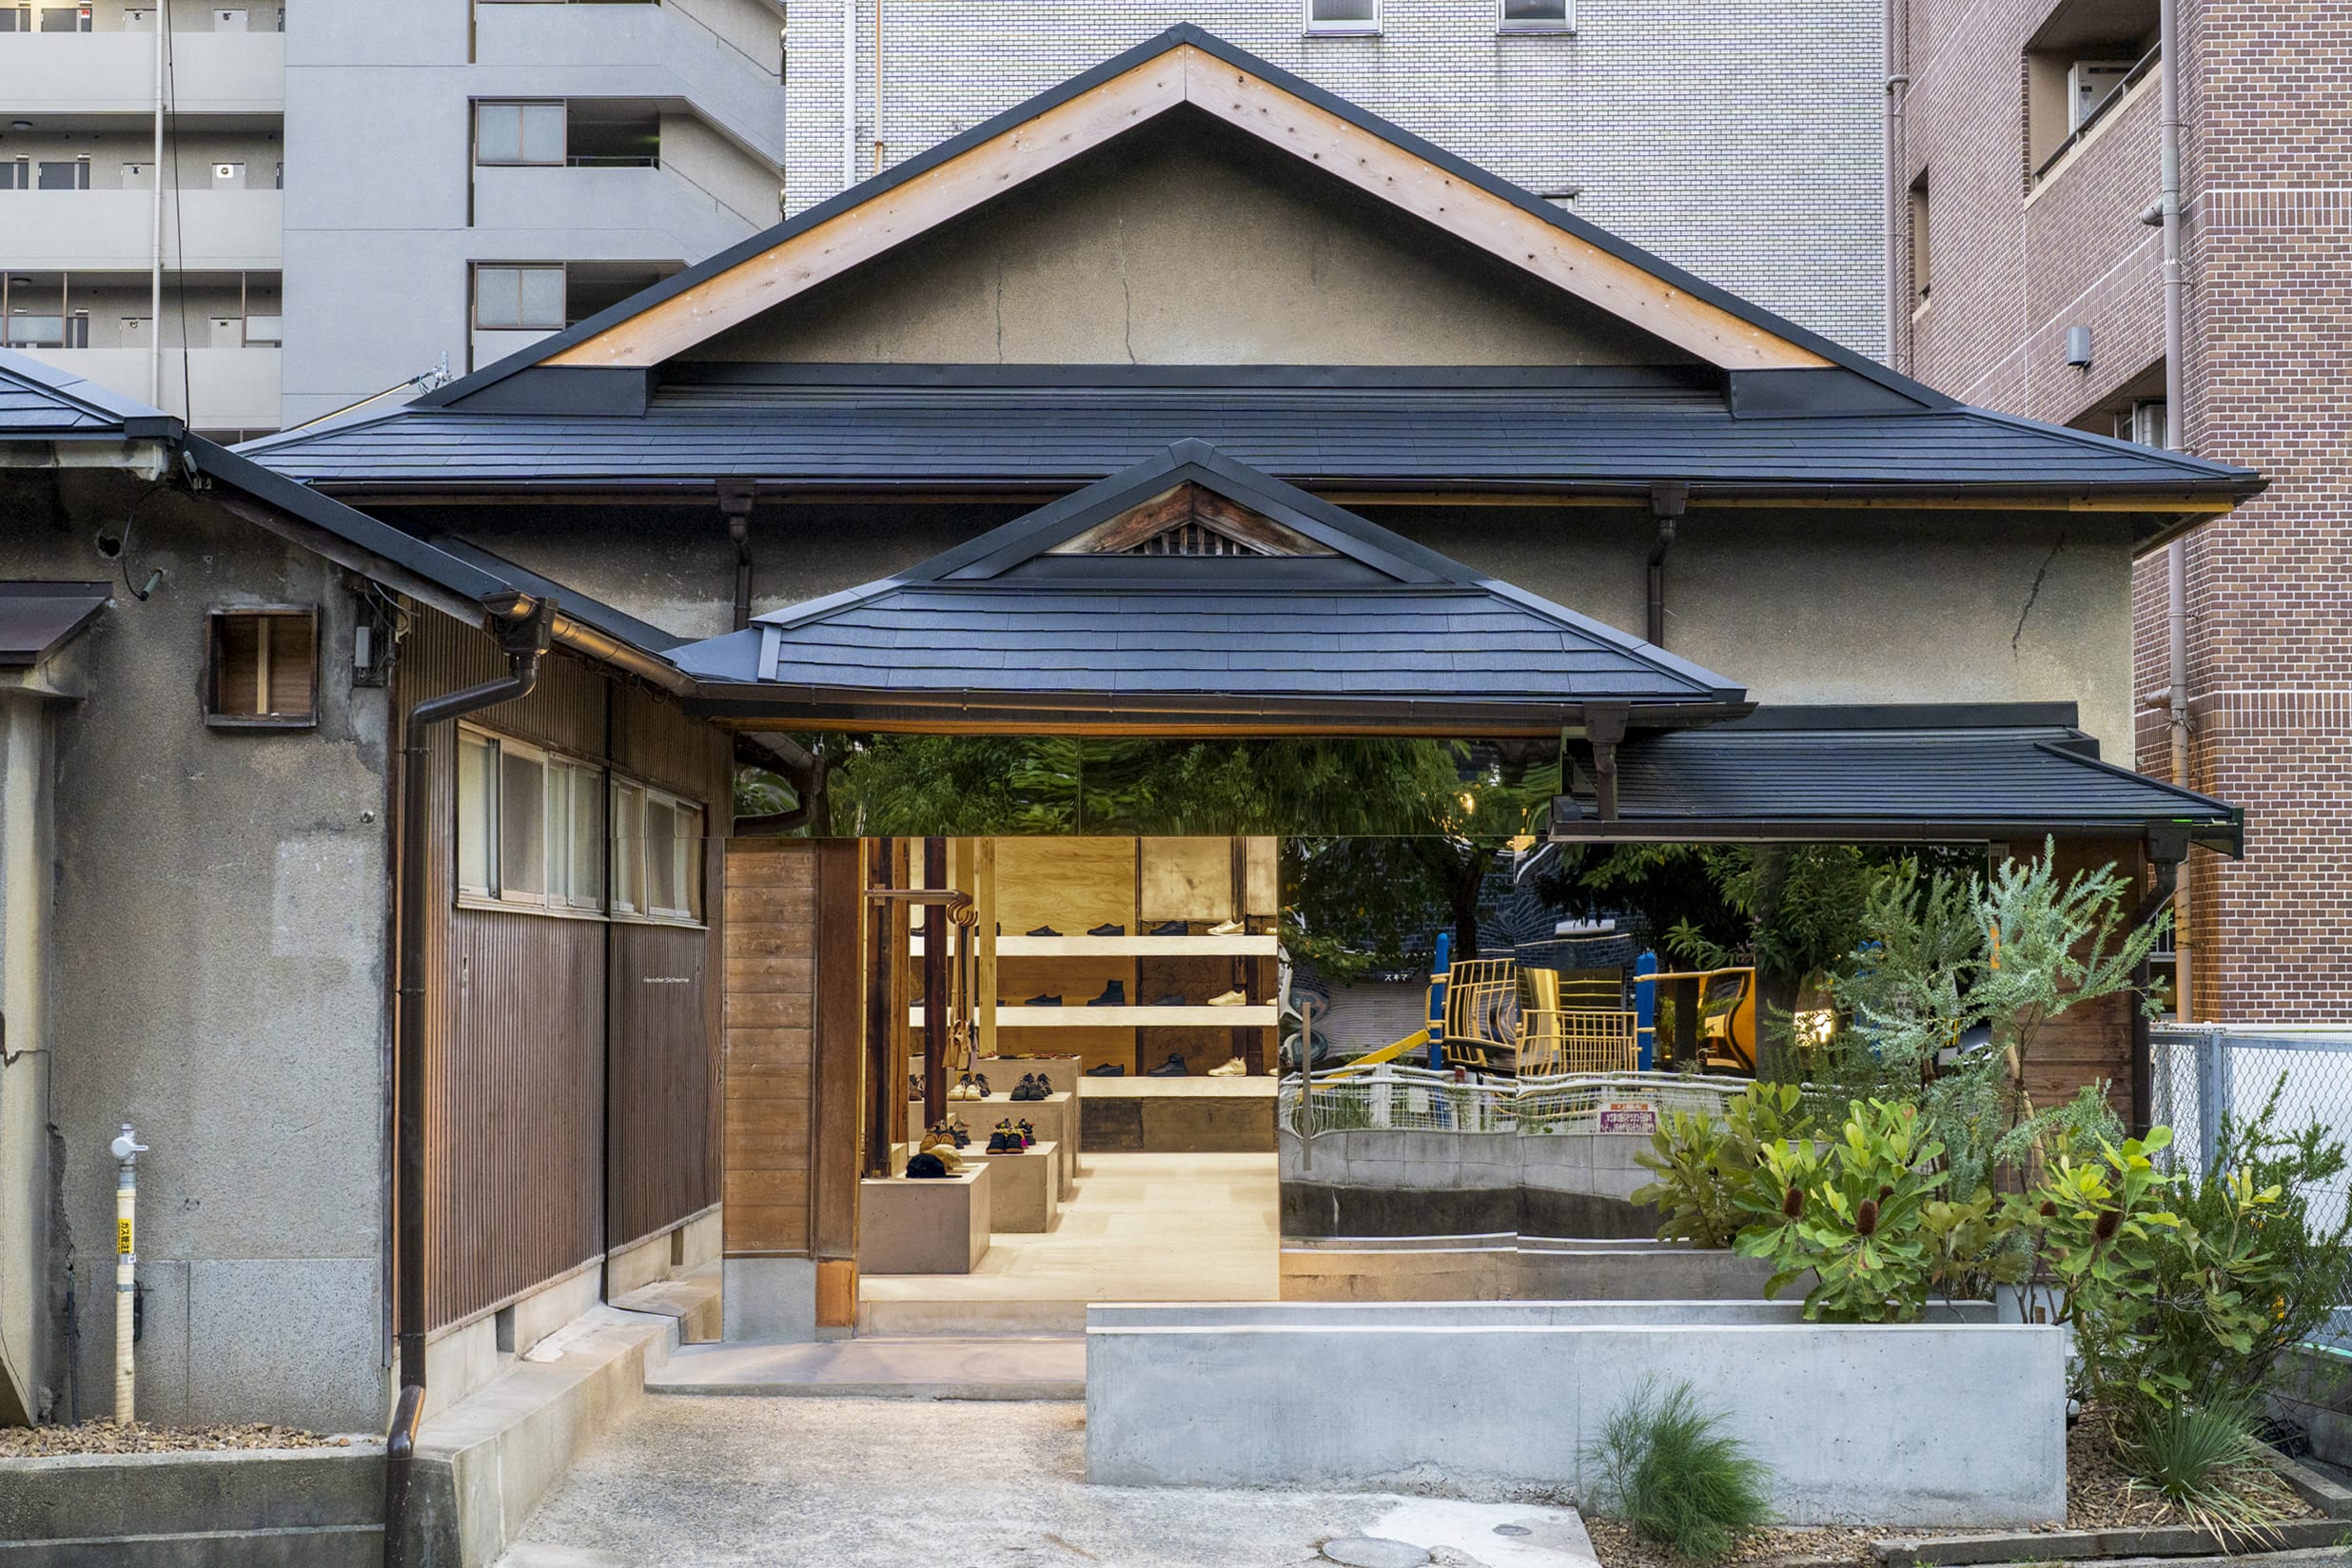 Hender Scheme関西初の直営店「スキマ 大阪」がオープン。 建築家・元